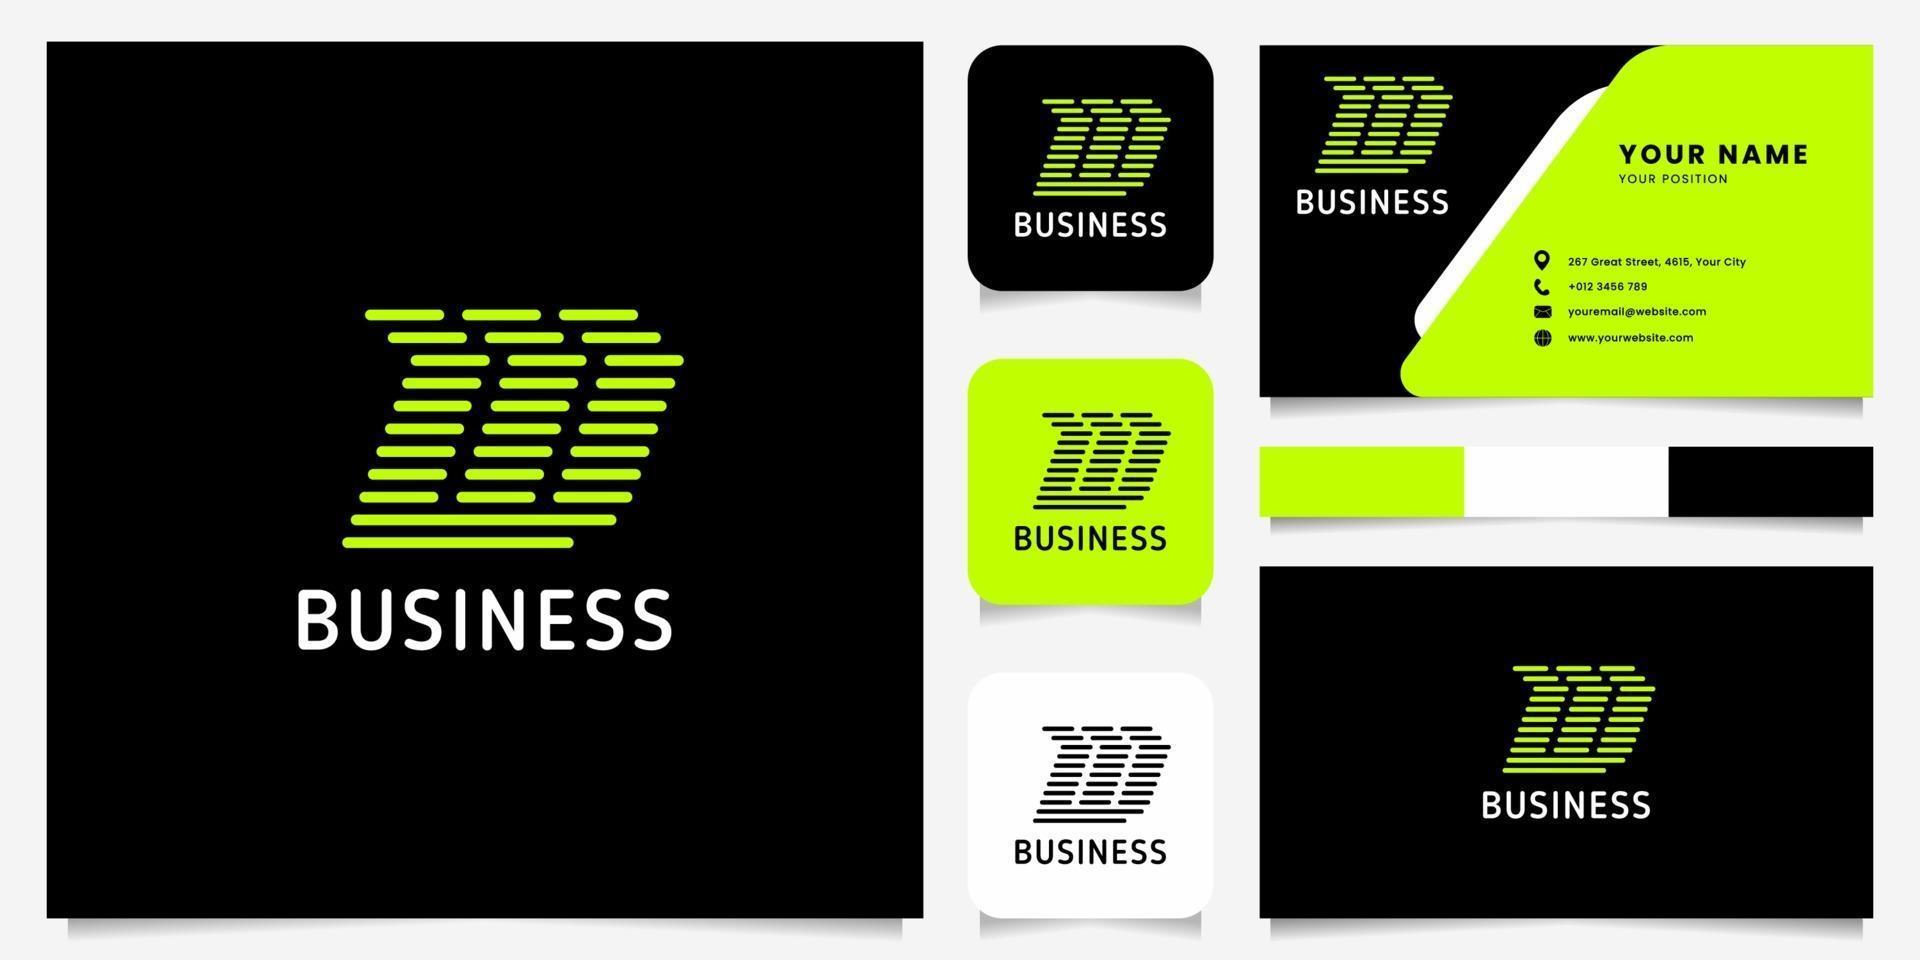 heldergroene pijl afgeronde lijnen letter w-logo op zwarte achtergrond met sjabloon voor visitekaartjes vector